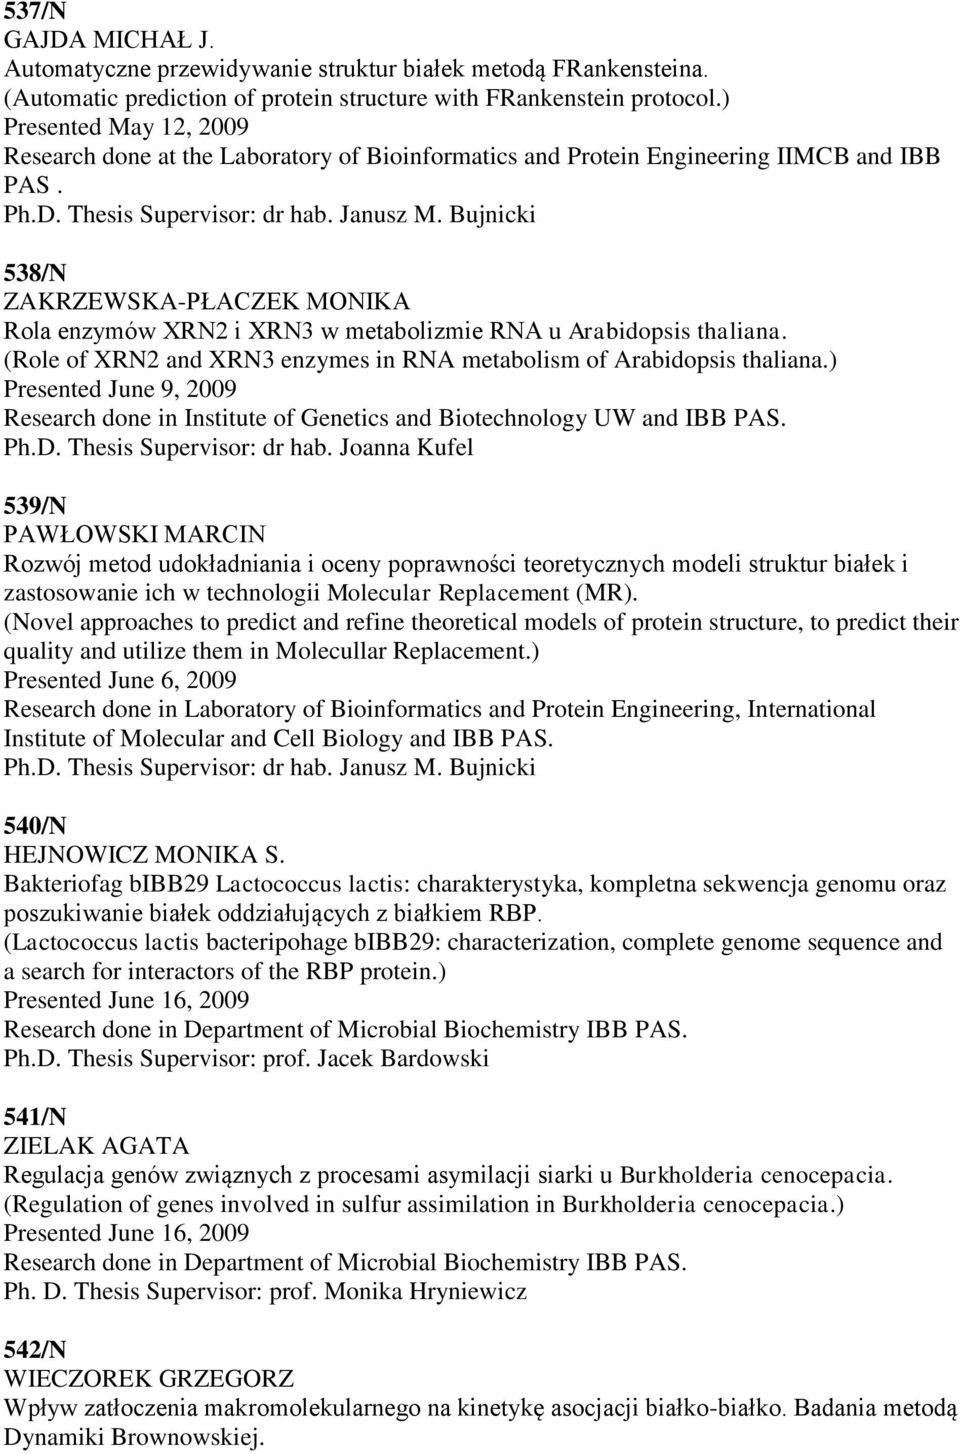 538/N ZAKRZEWSKA-PŁACZEK MONIKA Rola enzymów XRN2 i XRN3 w metabolizmie RNA u Arabidopsis thaliana. (Role of XRN2 and XRN3 enzymes in RNA metabolism of Arabidopsis thaliana.